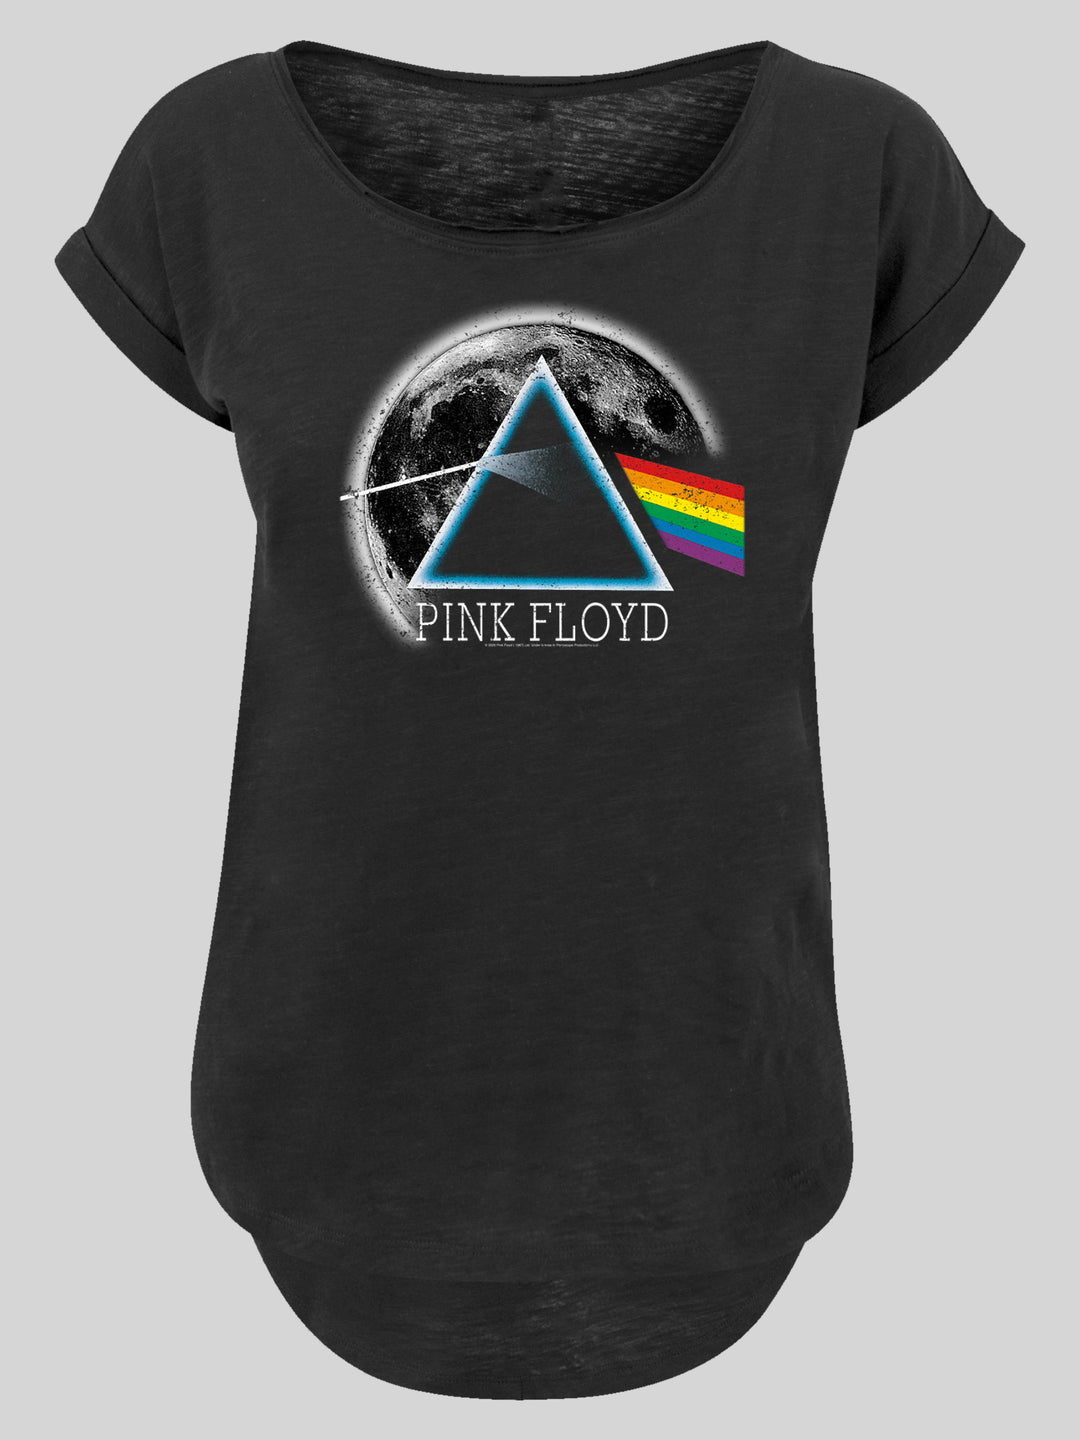 Pink Floyd T-Shirt | Dark Side of The Moon | Premium Long Ladies Tee